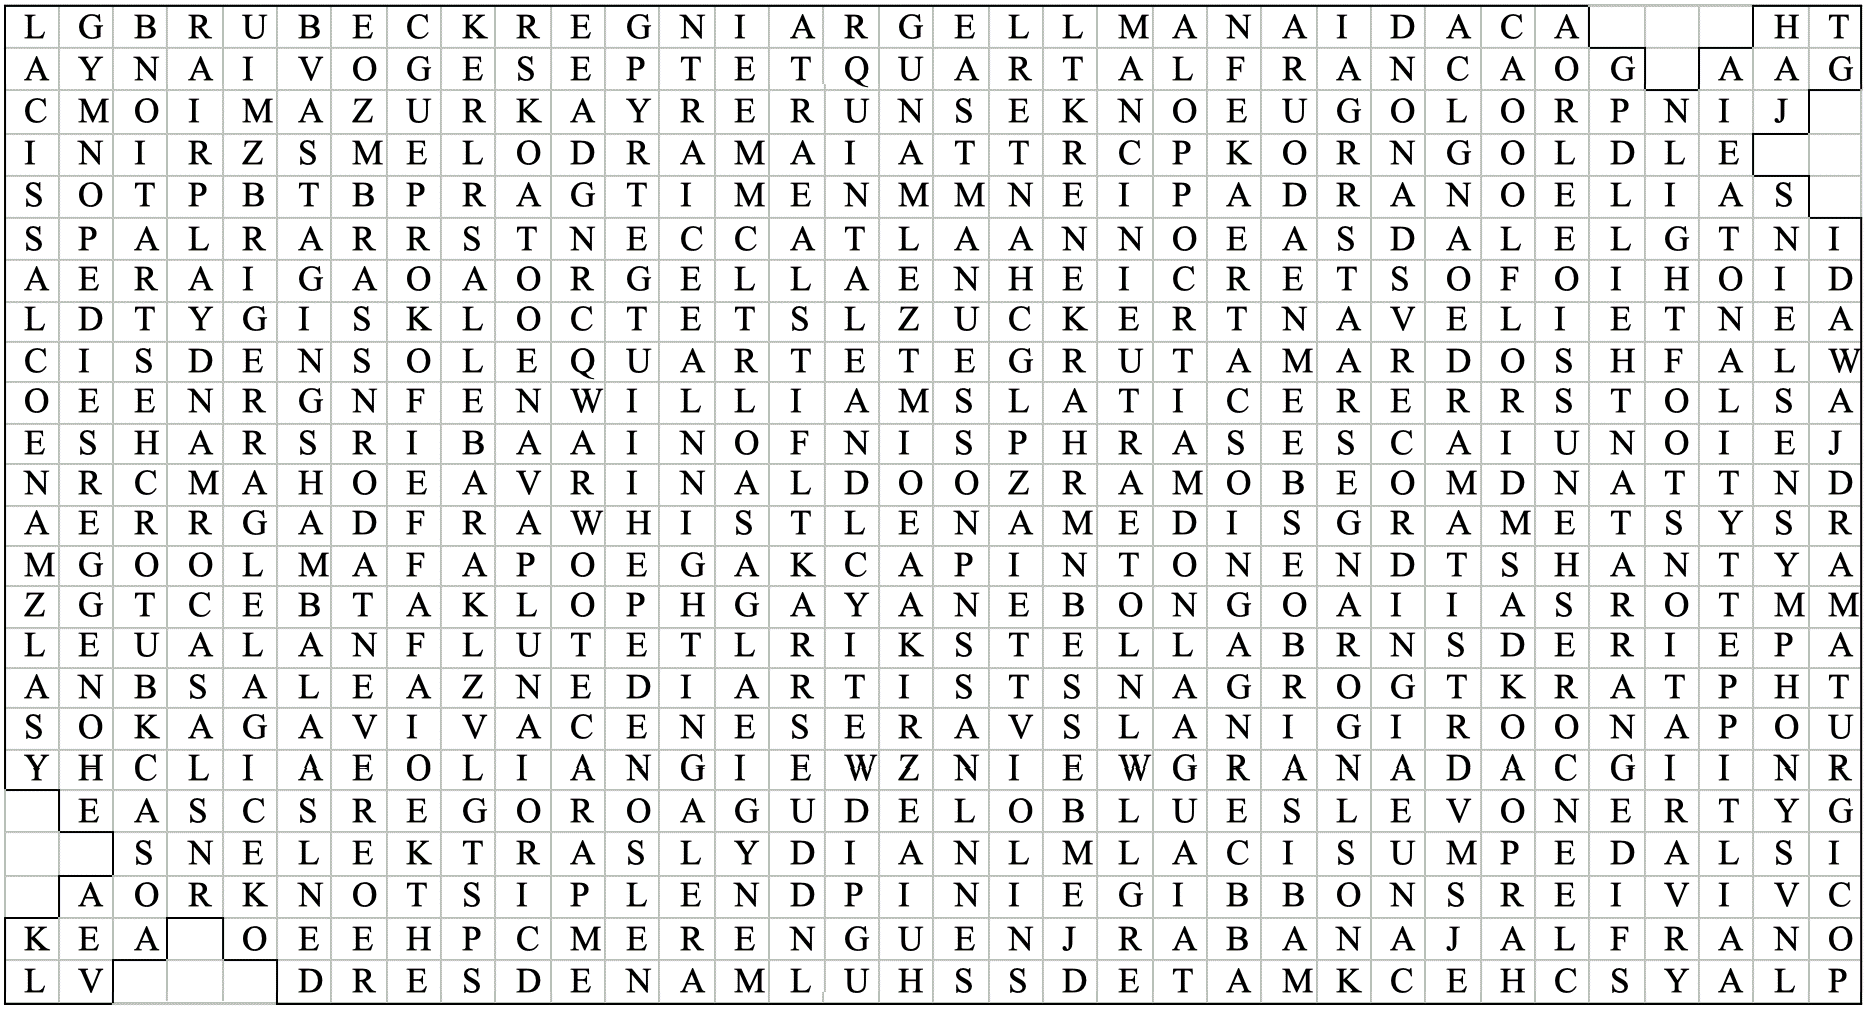 Agnesi word puzzle, © Allan Rae